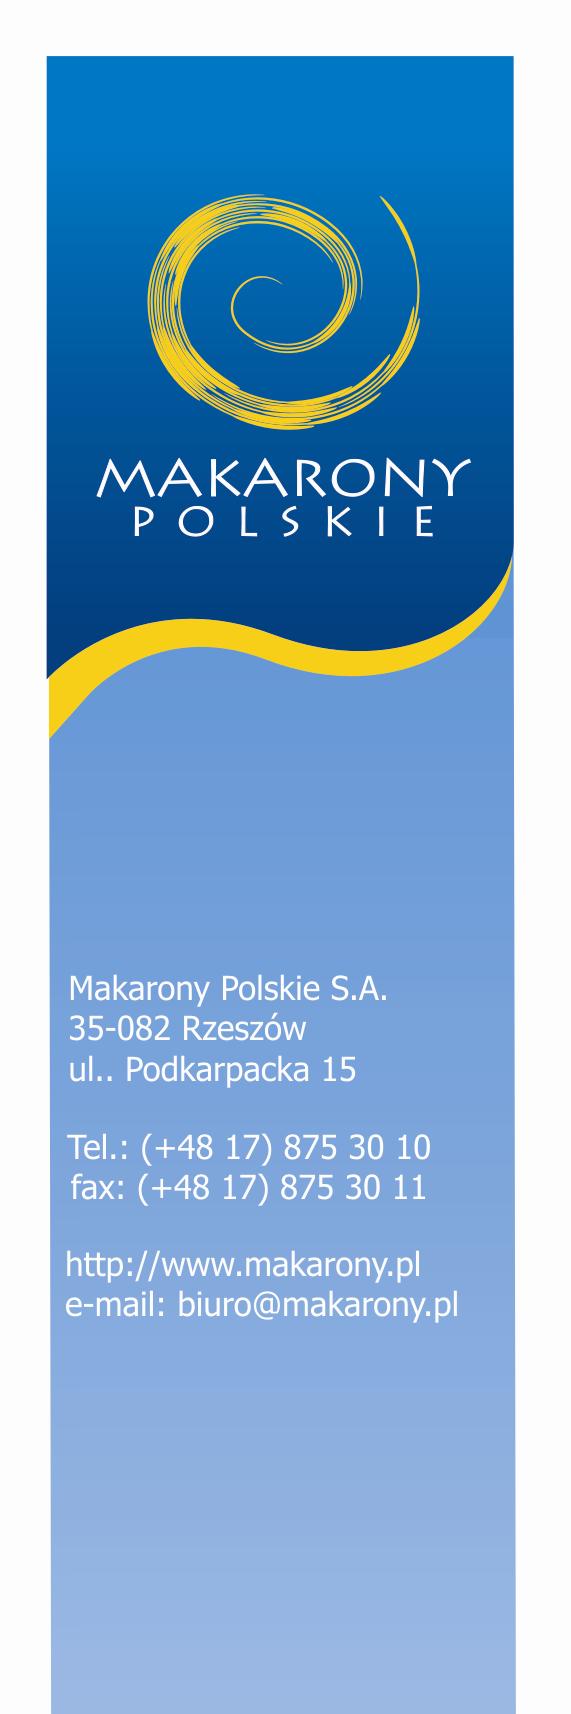 Rzeszów, 21 maja 2007 roku Szanowni Państwo, W imieniu Zarządu Makarony Polskie S.A. mam przyjemność przedstawić Raport Roczny z działalności Spółki w 2006 roku.